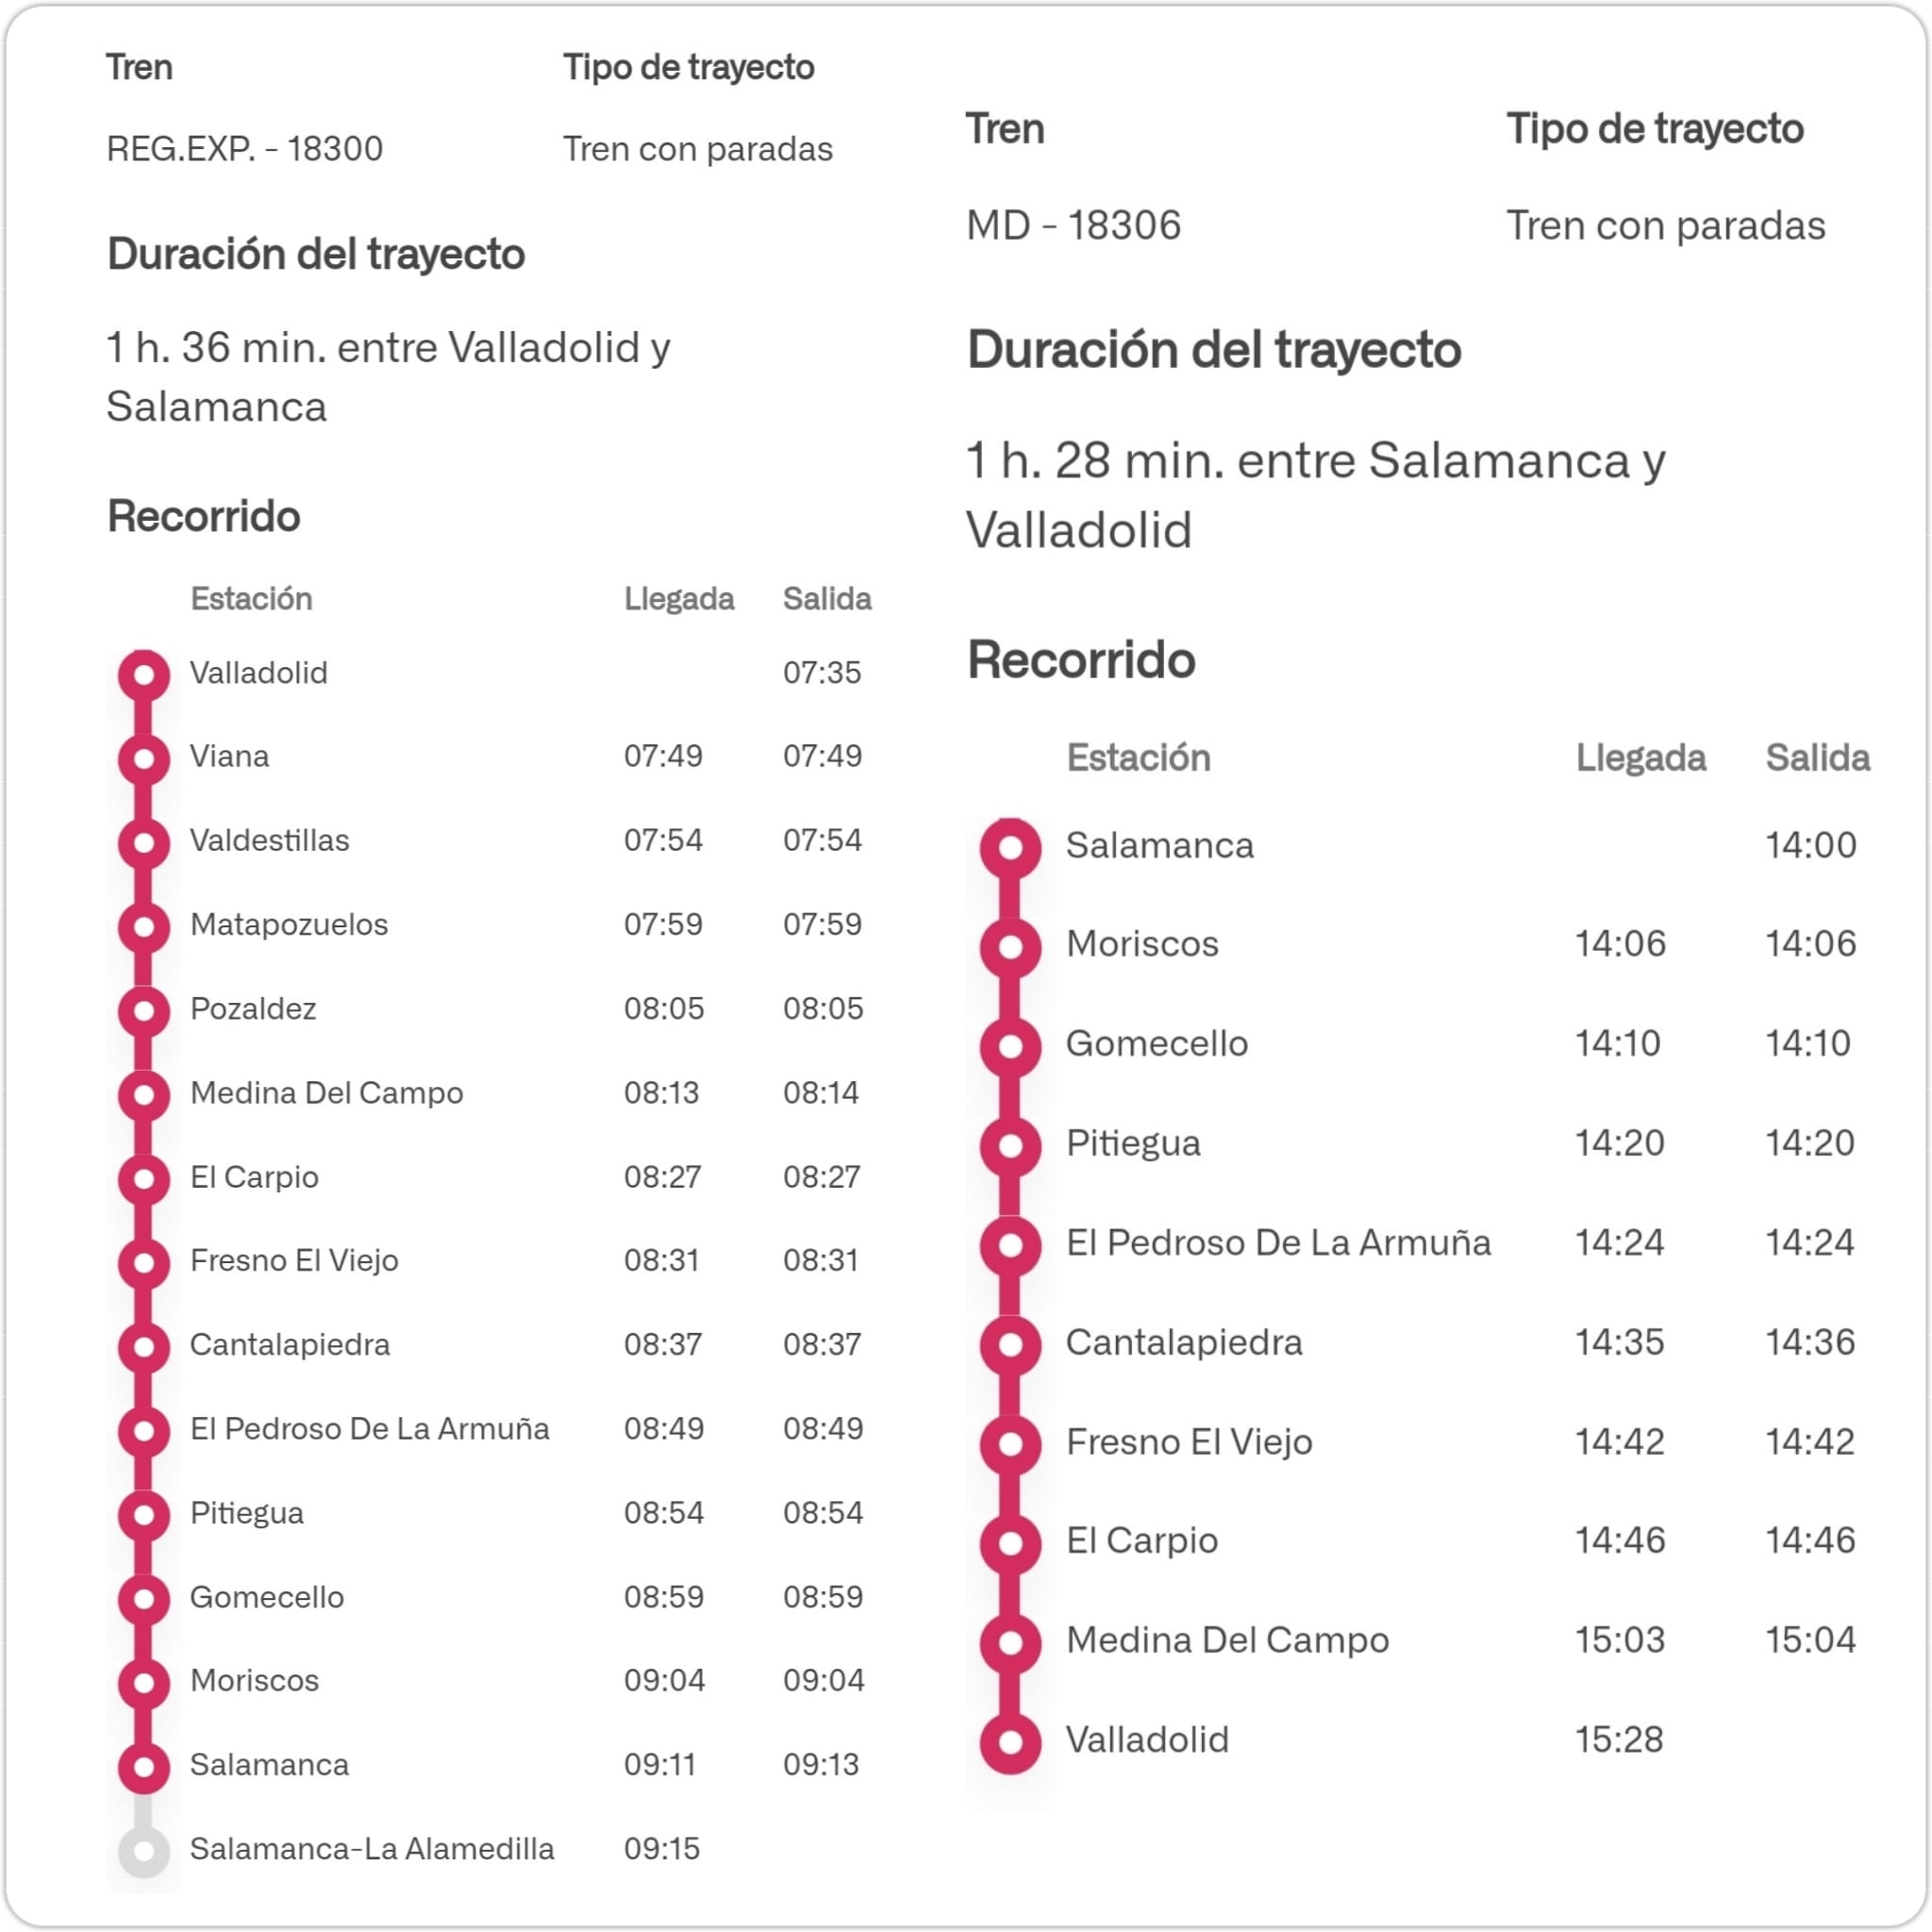 Foto 1 - Recuperan trenes con parada en El Pedroso de la Armuña, Pitiegua, Gomecello, Moriscos y...